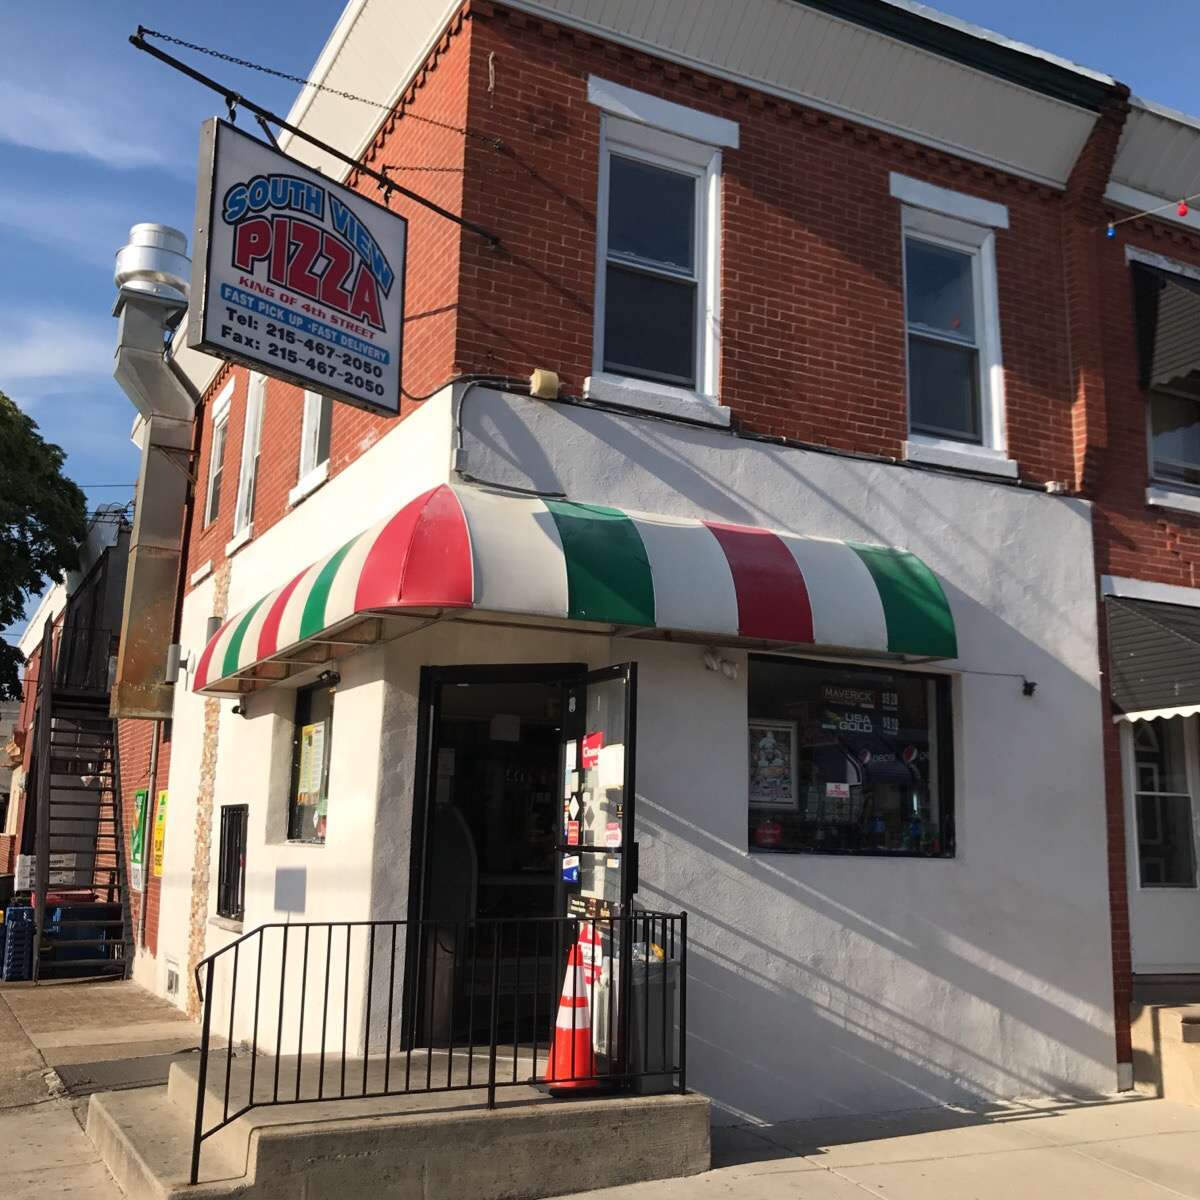 South View Pizza, Whitman, Philadelphia - Urbanspoon/Zomato